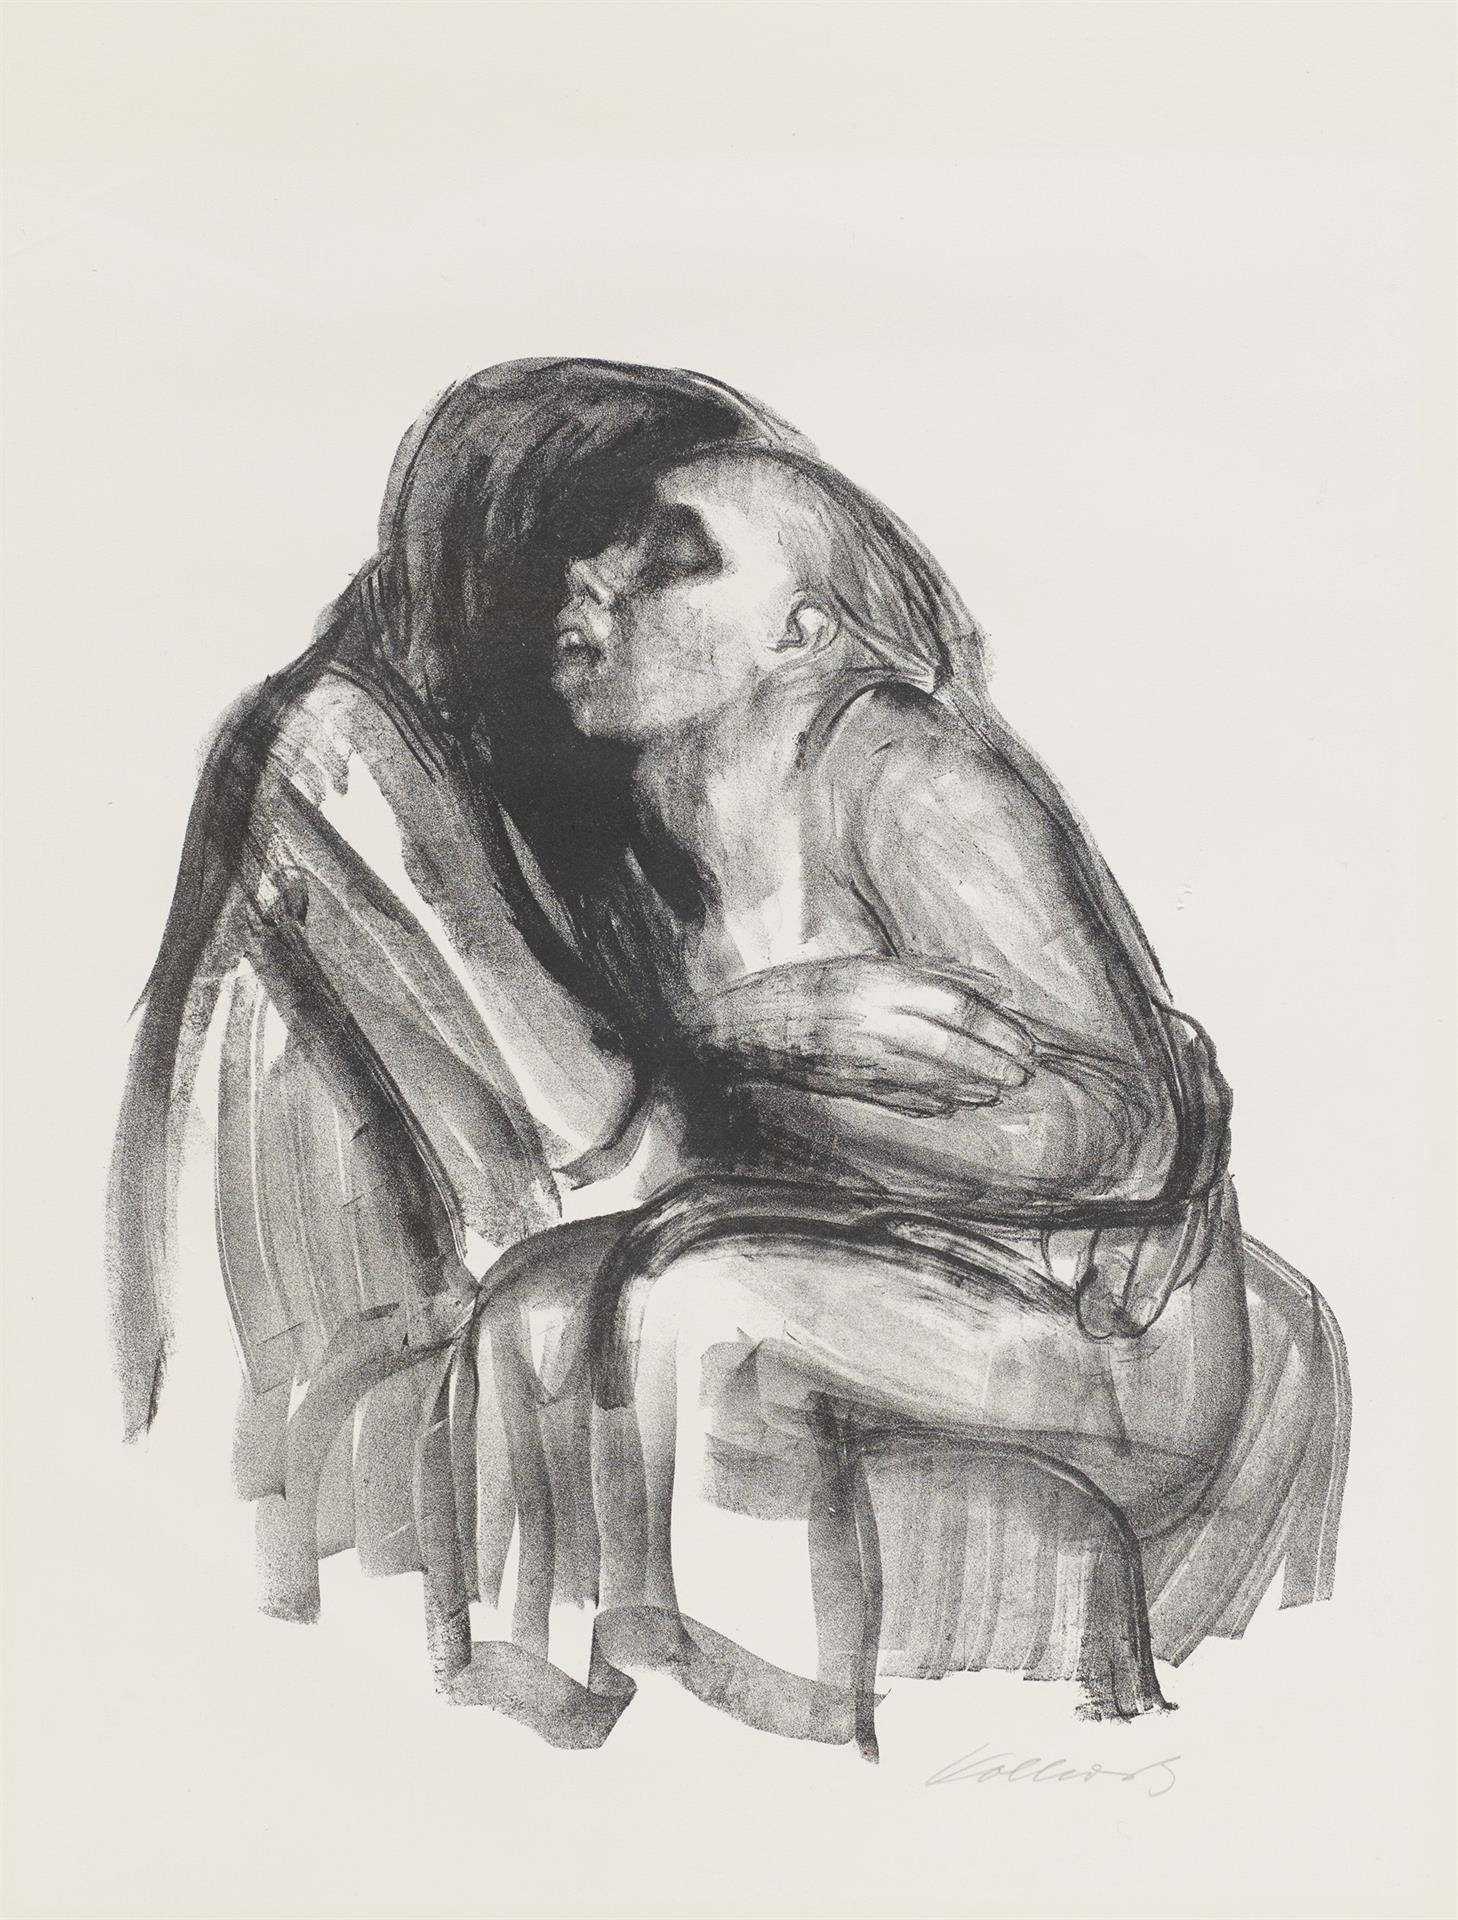 Käthe Kollwitz, La Mort tenant une jeune fille sur ses genoux, planche 2 de la série »Mort«, 1934, lithographie au crayon, Kn 265, Collection Kollwitz de Cologne © Käthe Kollwitz Museum Köln